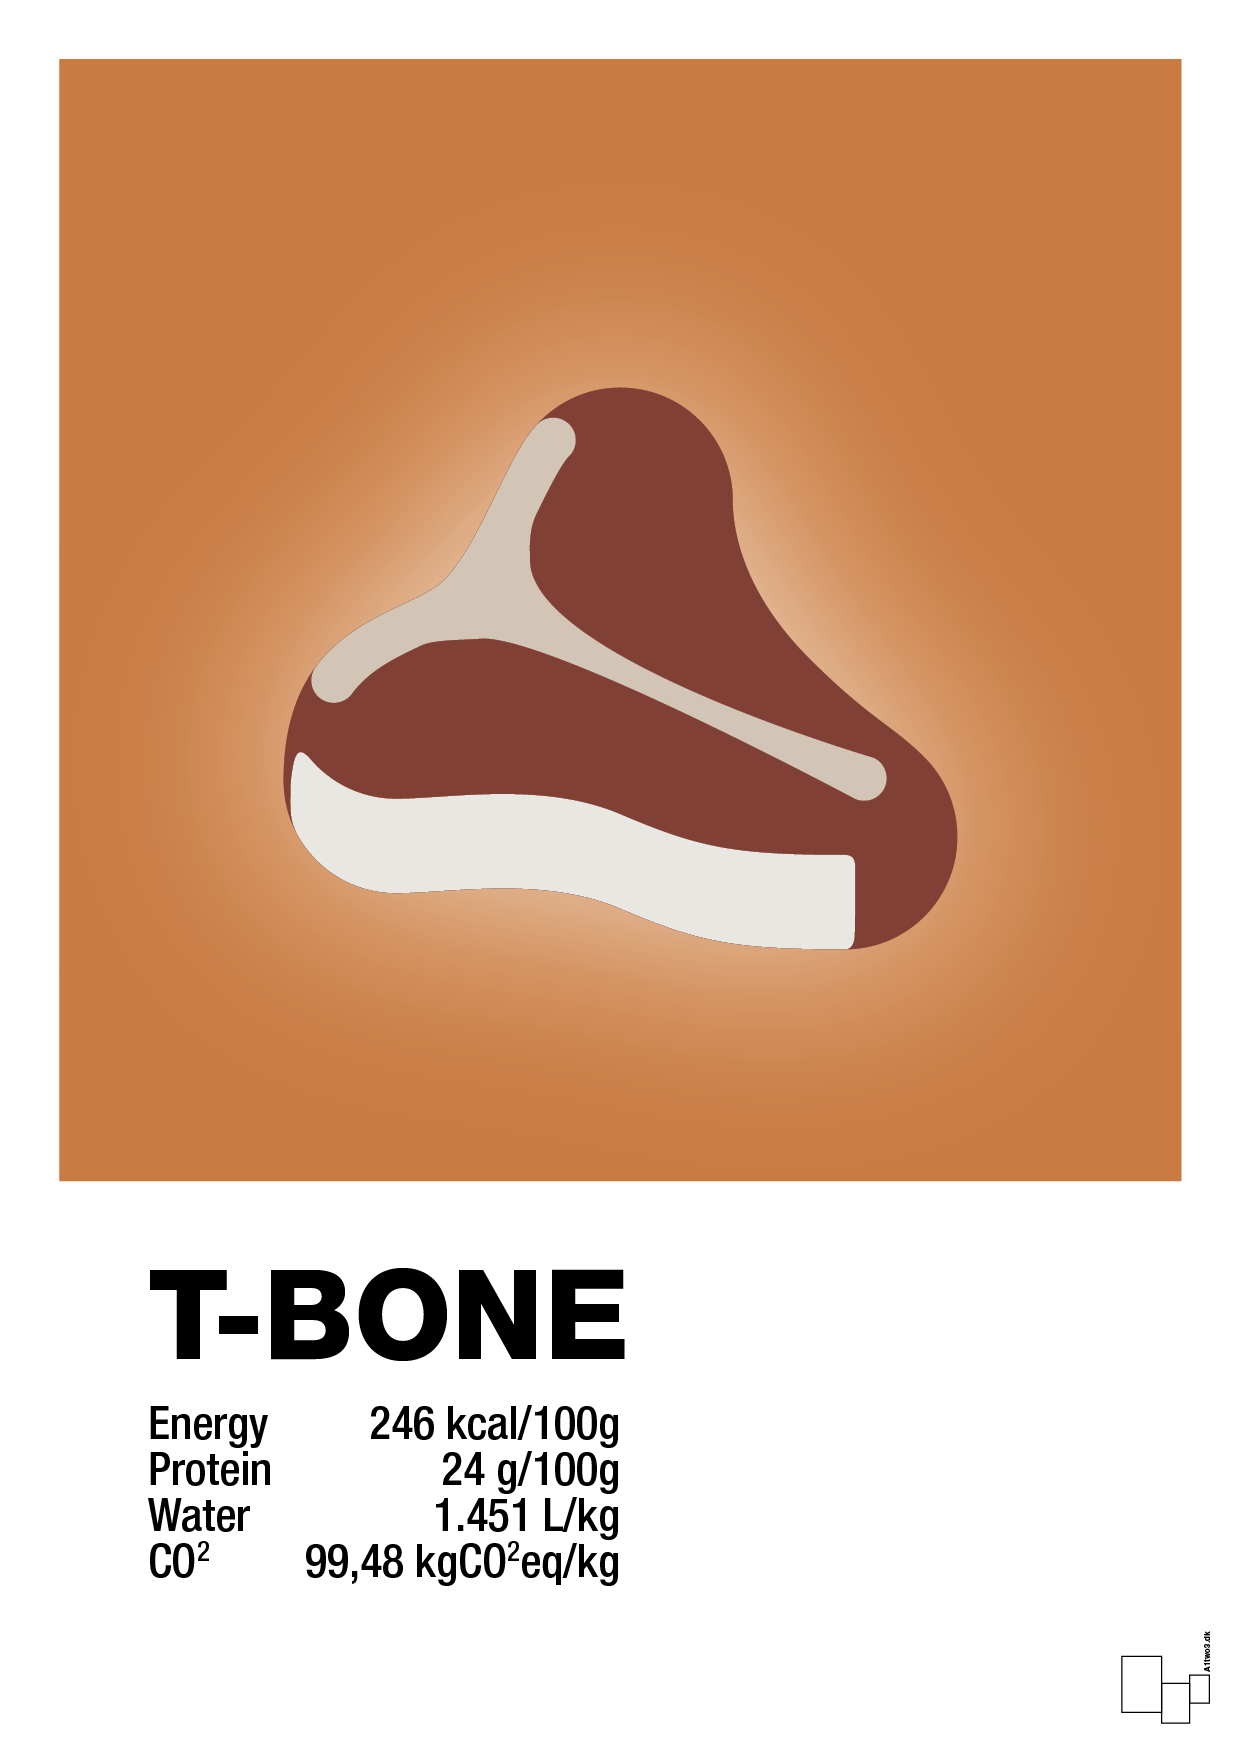 t-bone nutrition og miljø - Plakat med Mad & Drikke i Rumba Orange